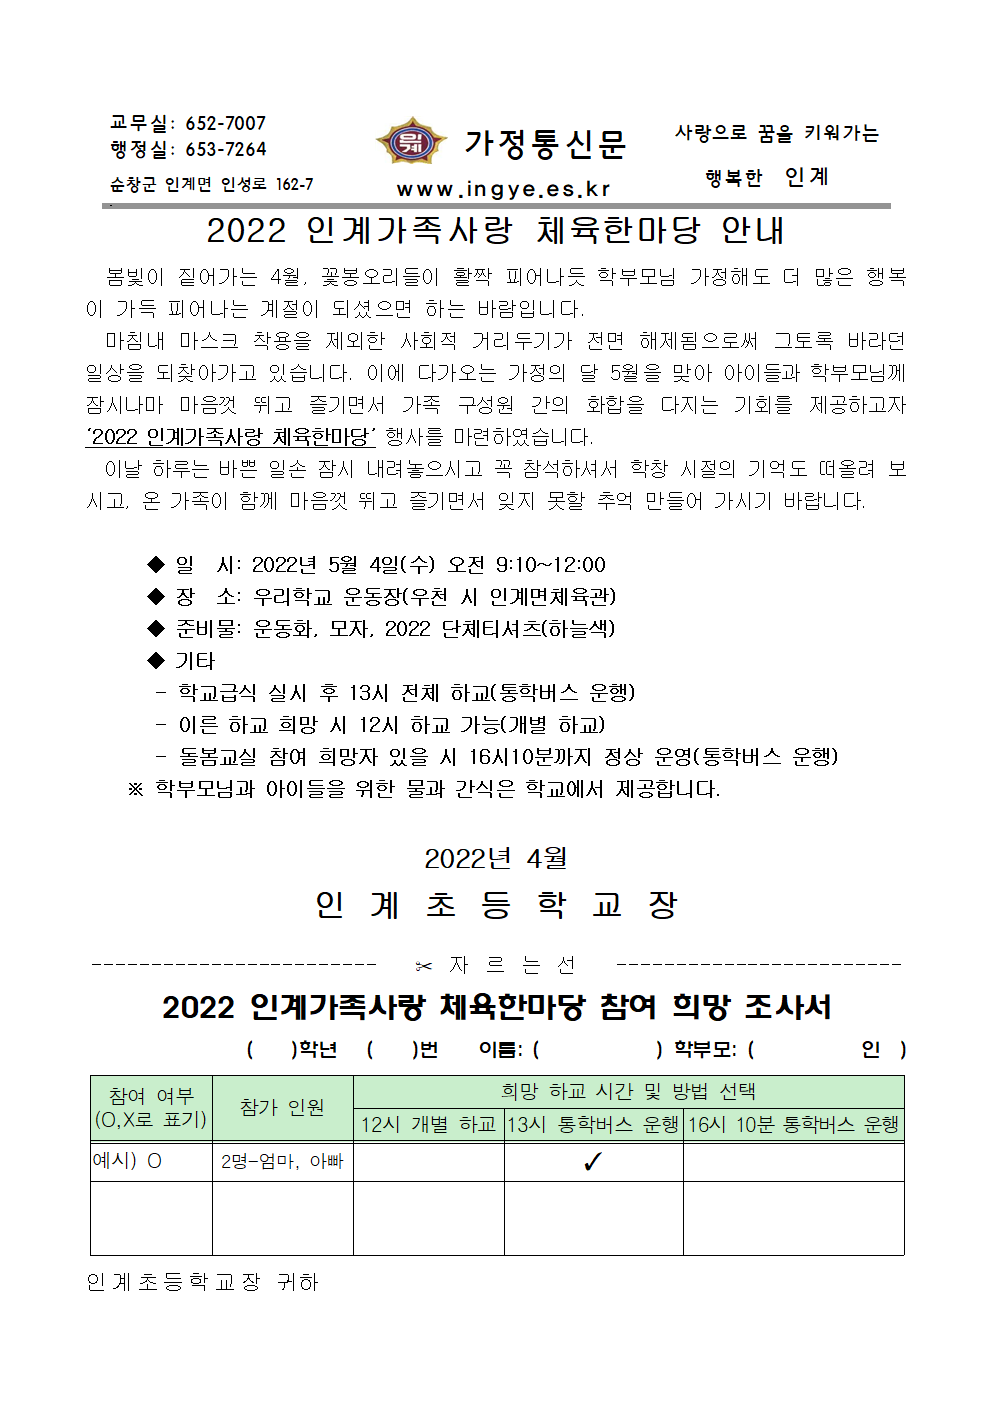 2022 인계가족사랑 체육한마당 가정통신문 (1)001